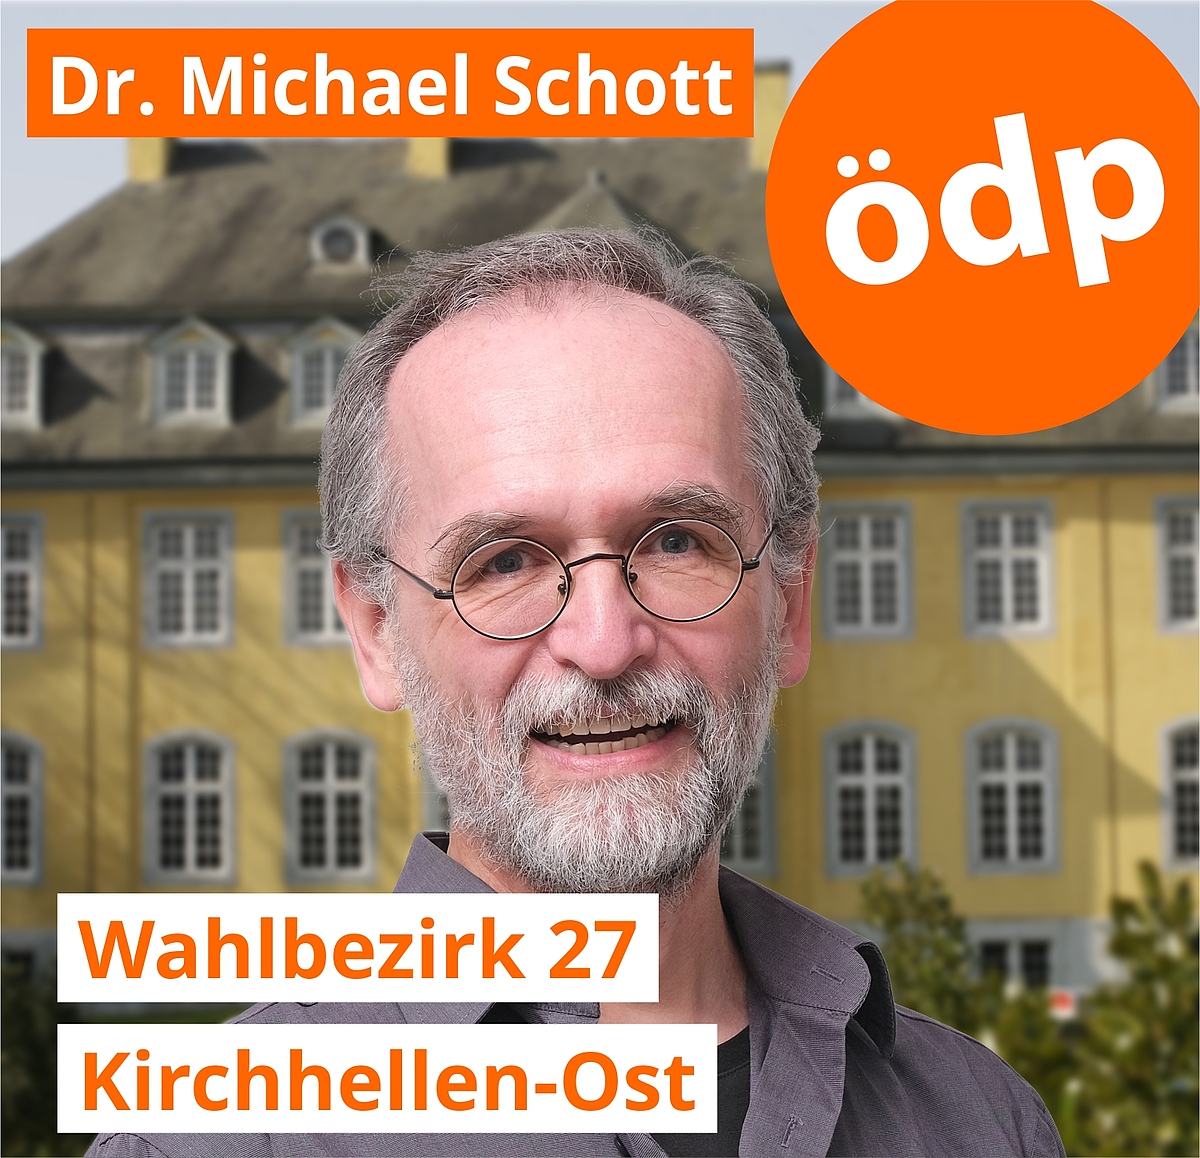 Dr. Michael Schott | Wahlbezirk 27 | Kirchhellen-Ost